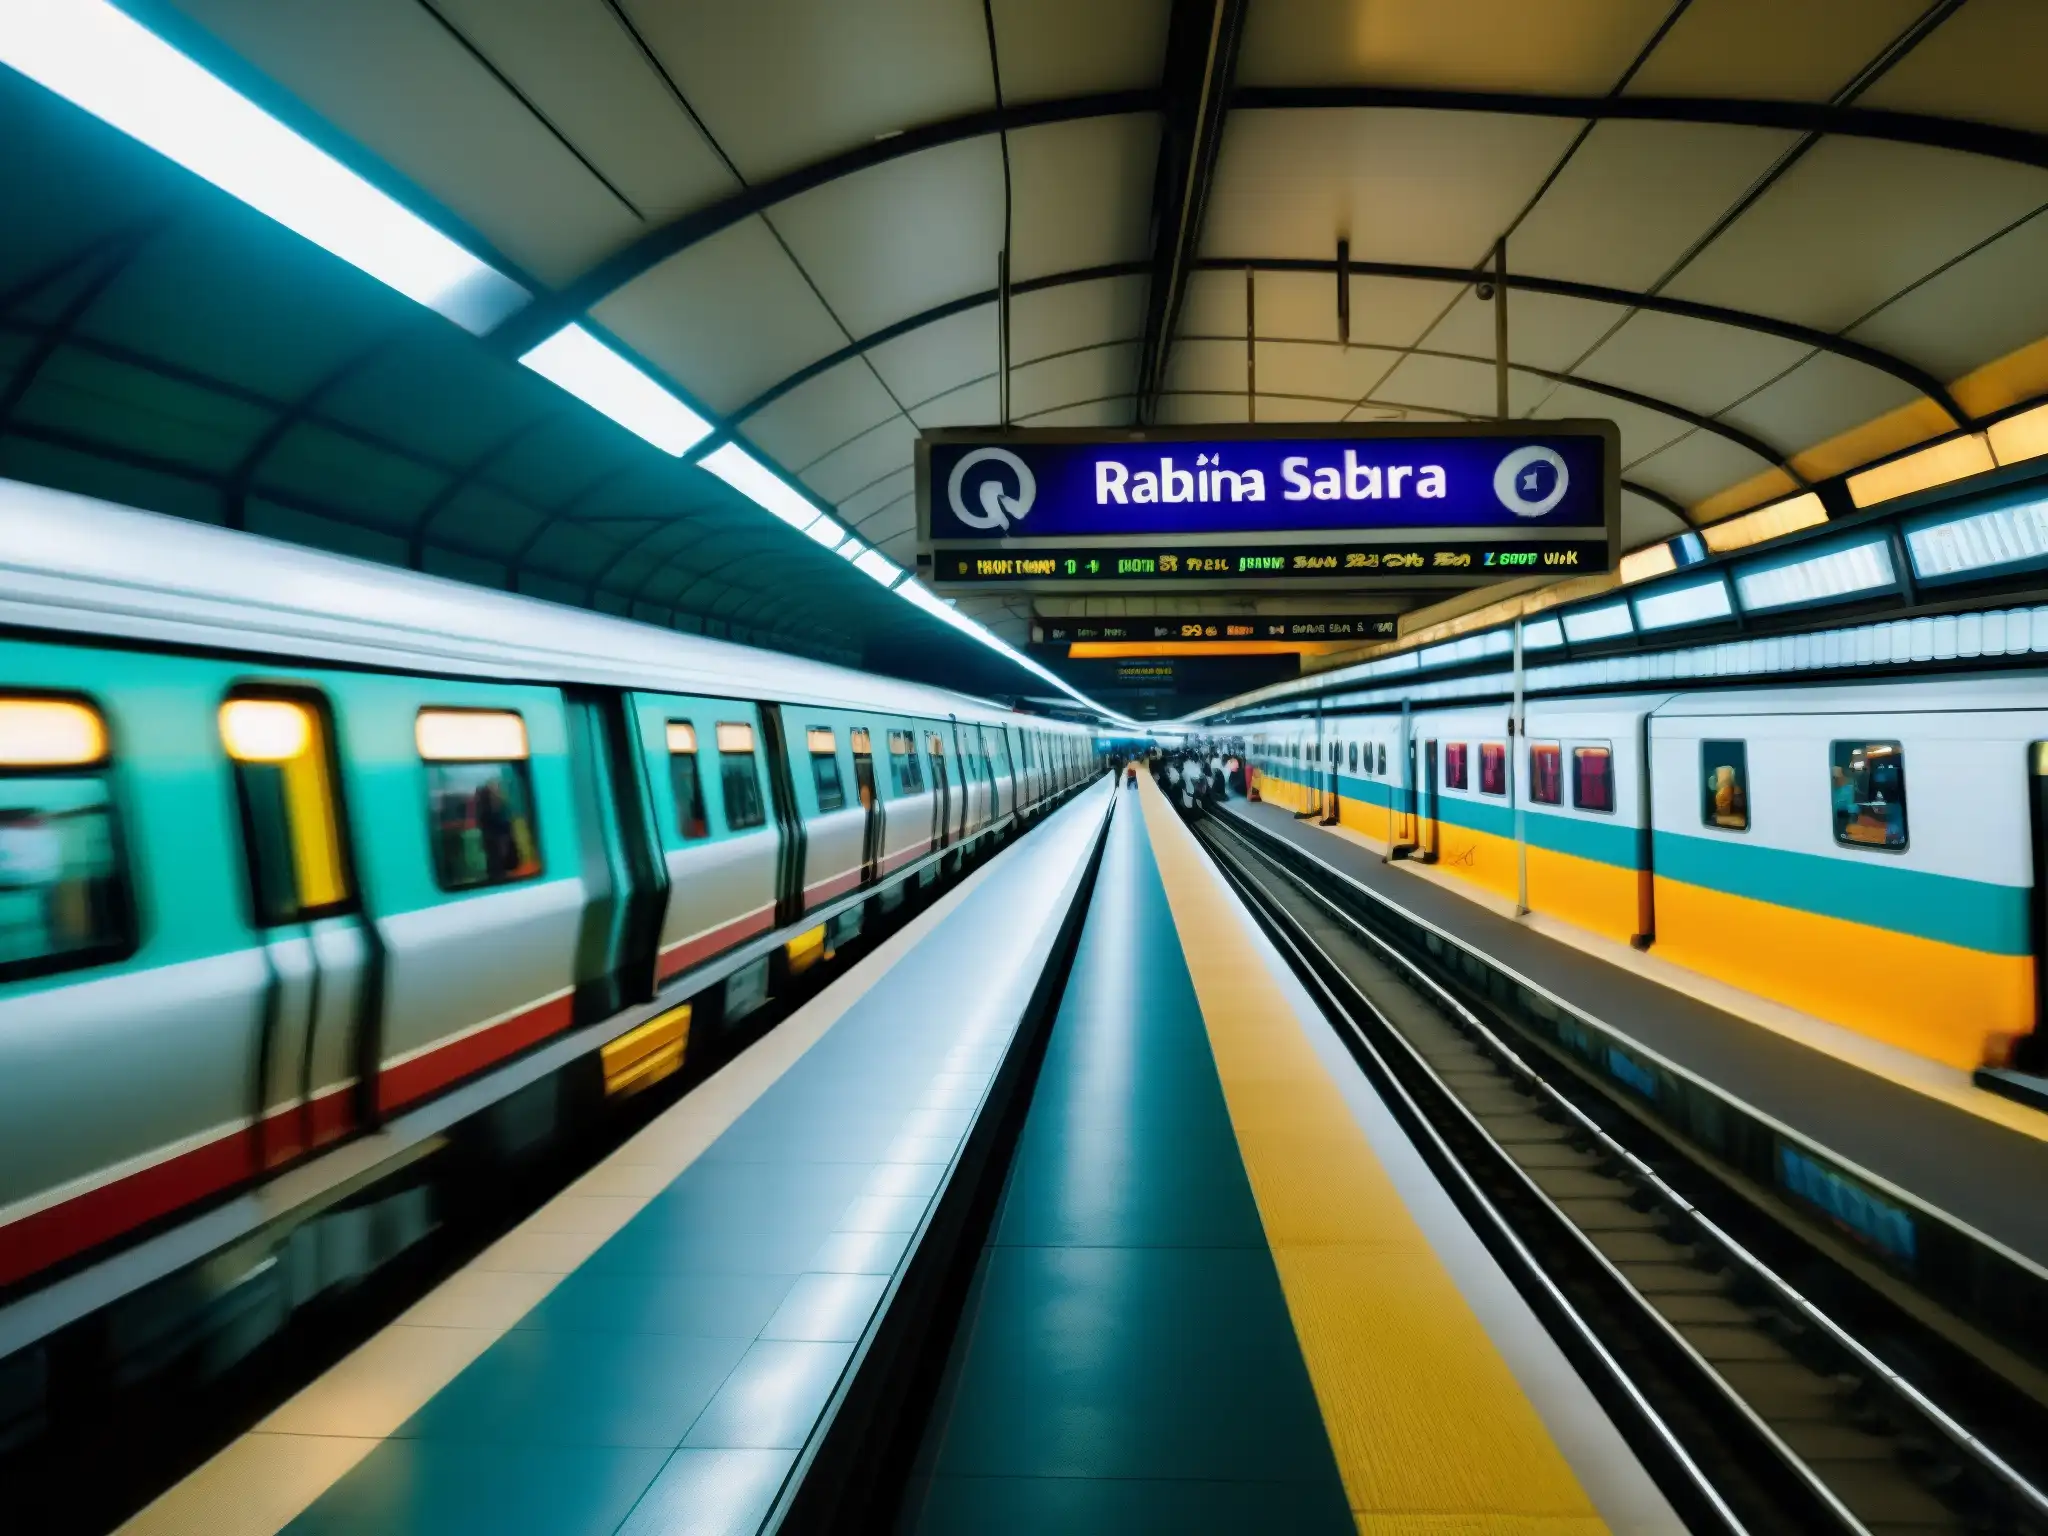 Voces de Rabindra Sarobar Metro: Imagen documental de la estación en Kolkata, India, con su bullicio y detalles arquitectónicos